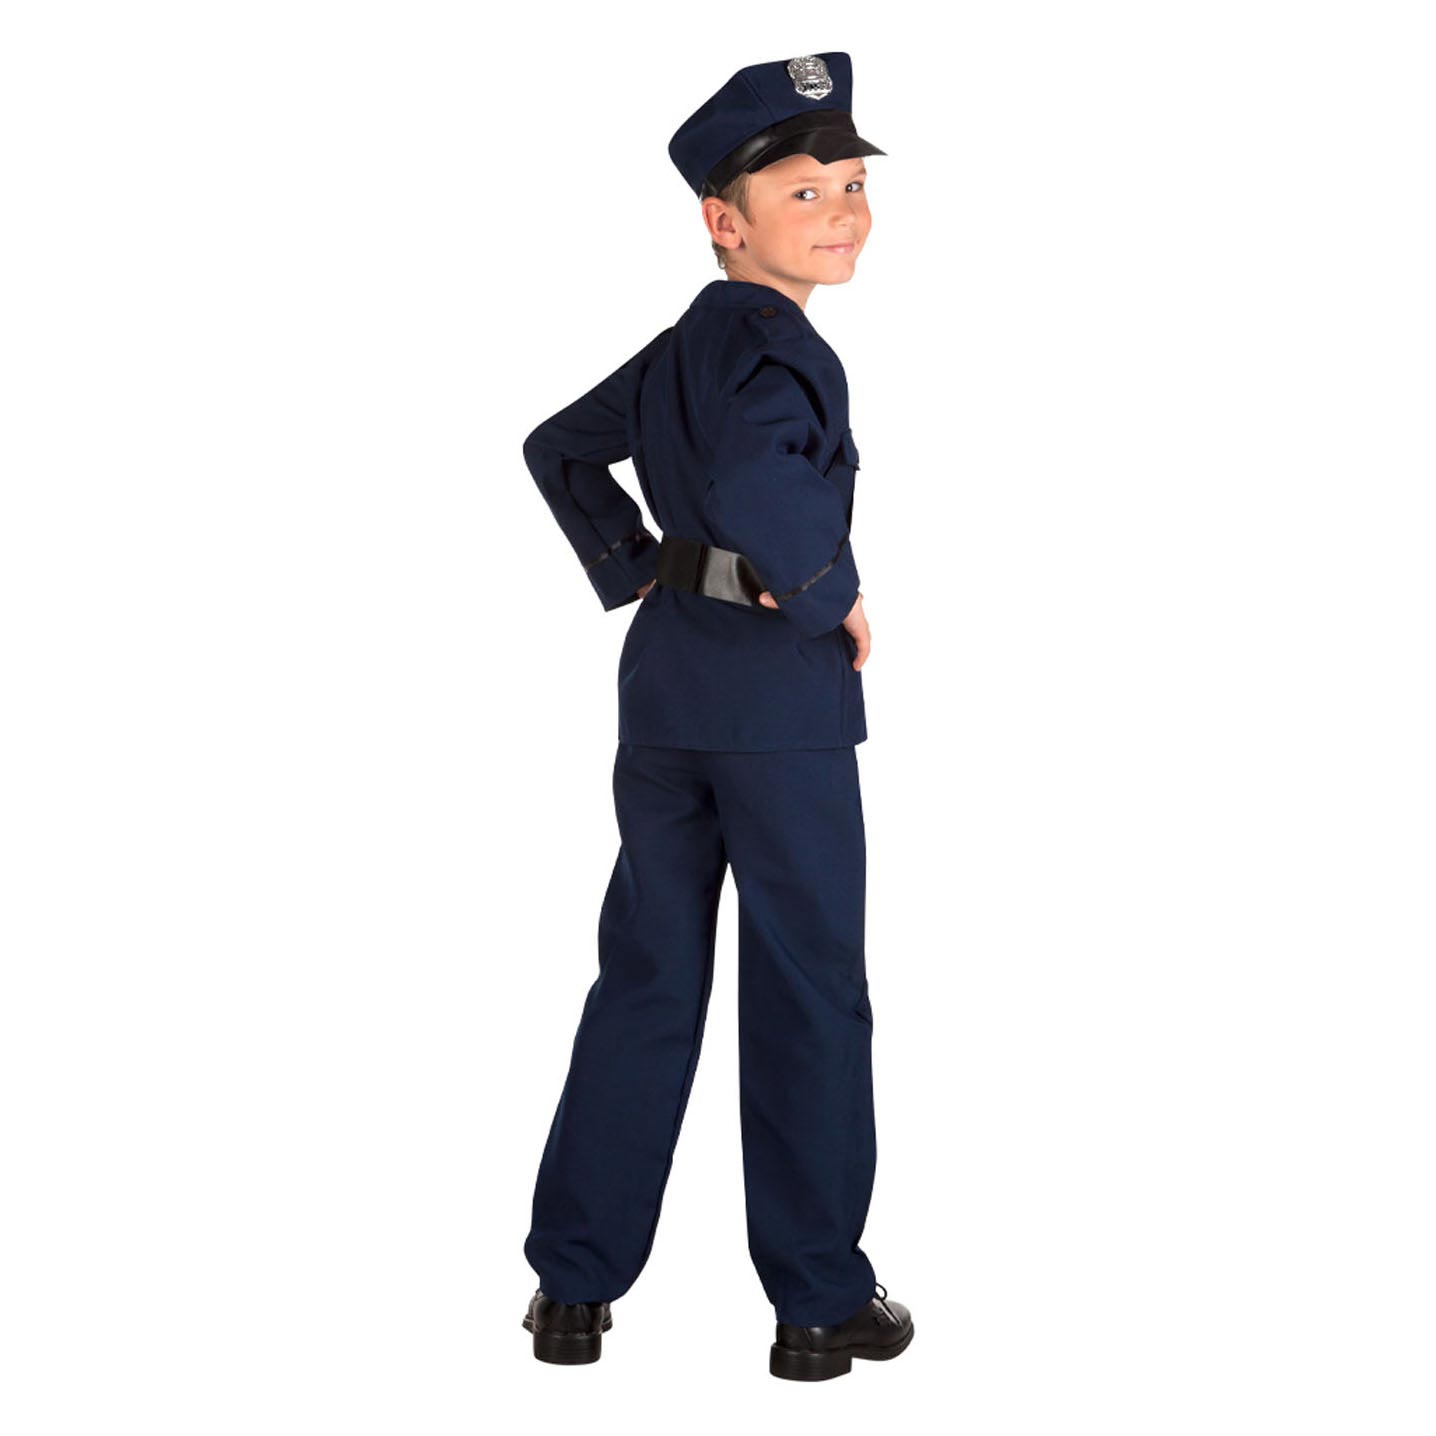 Déguisement enfant Policier, 4-6 ans